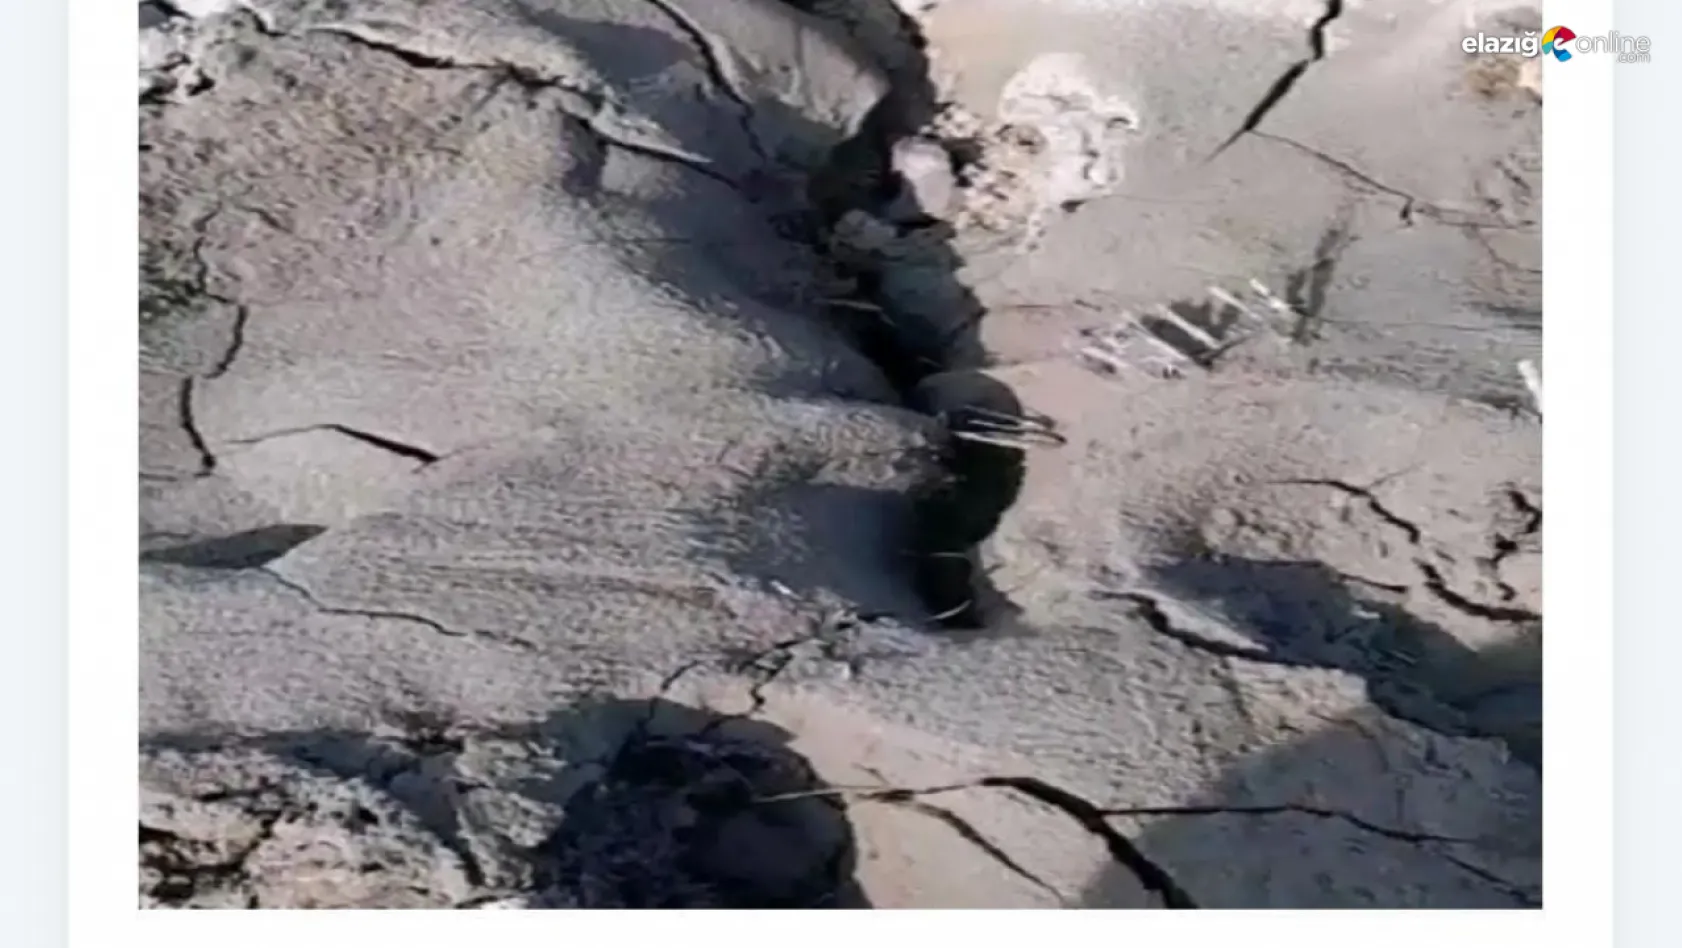 Elazığ'ı tedirgin eden görüntü! Zemin sıvılaşması Palu'da da görüldü